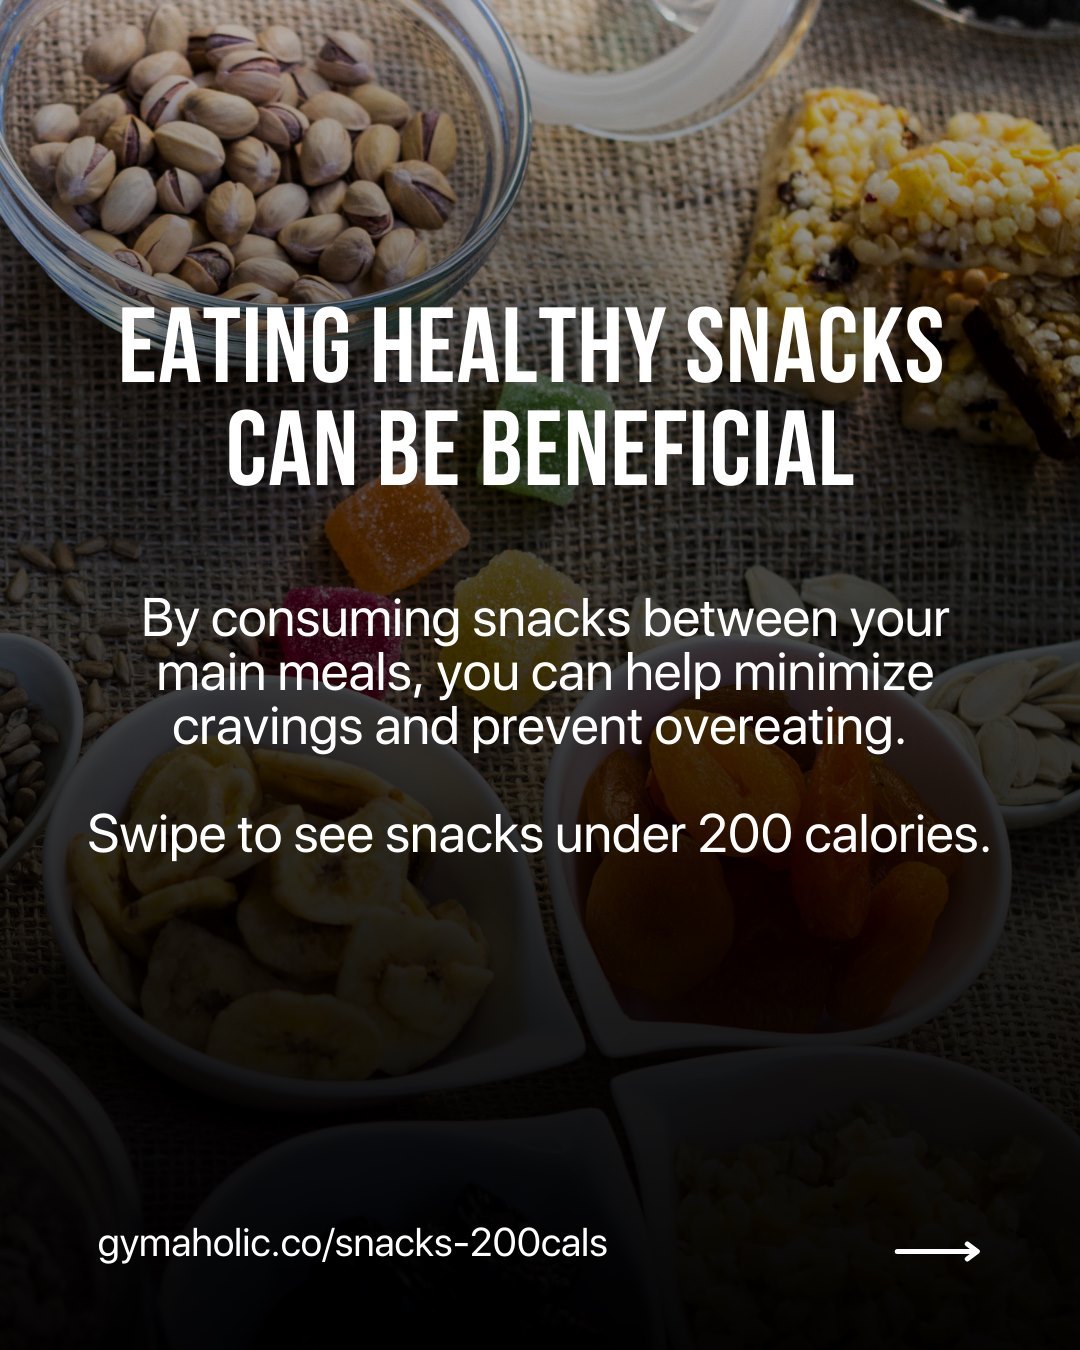 5 Healthy Snacks Under 200 Calories